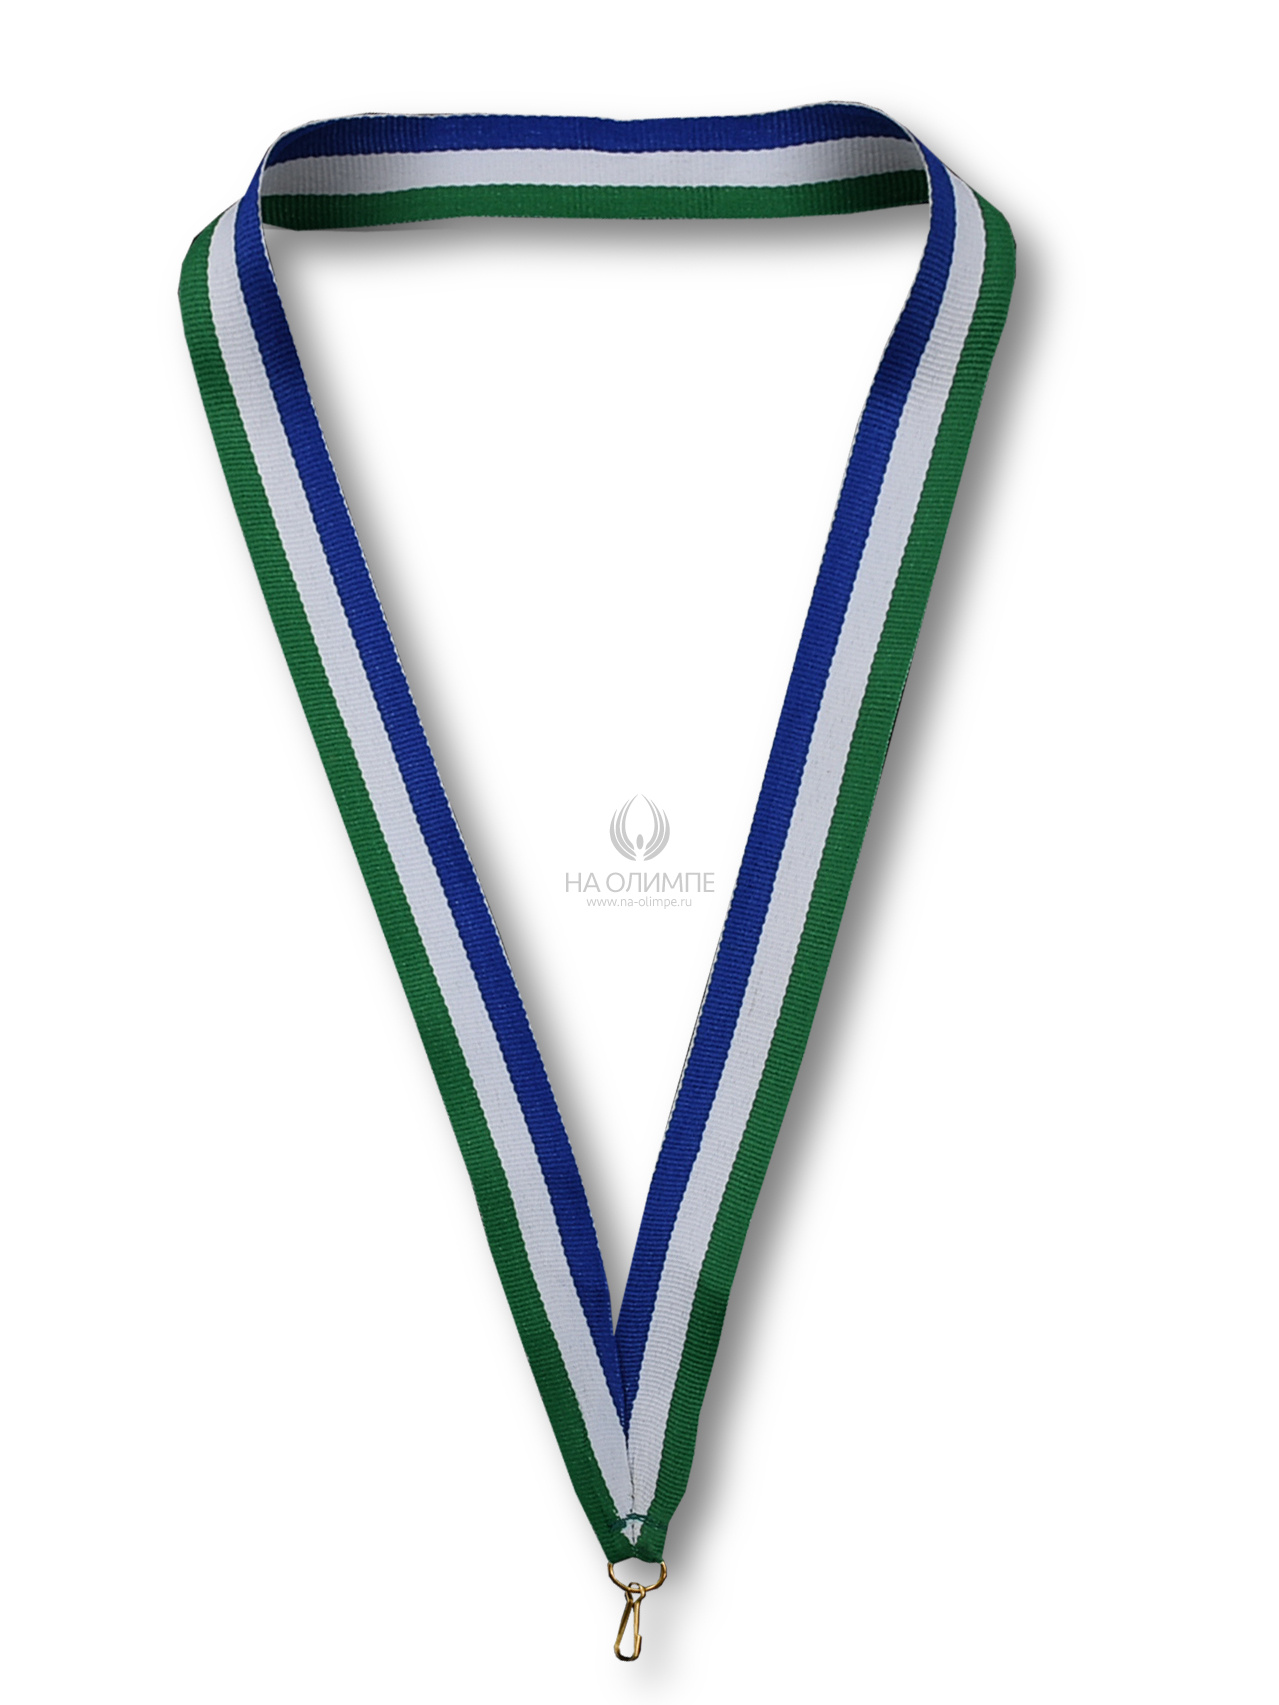 Лента для медали (Башкортостан), ширина ленты 22 мм